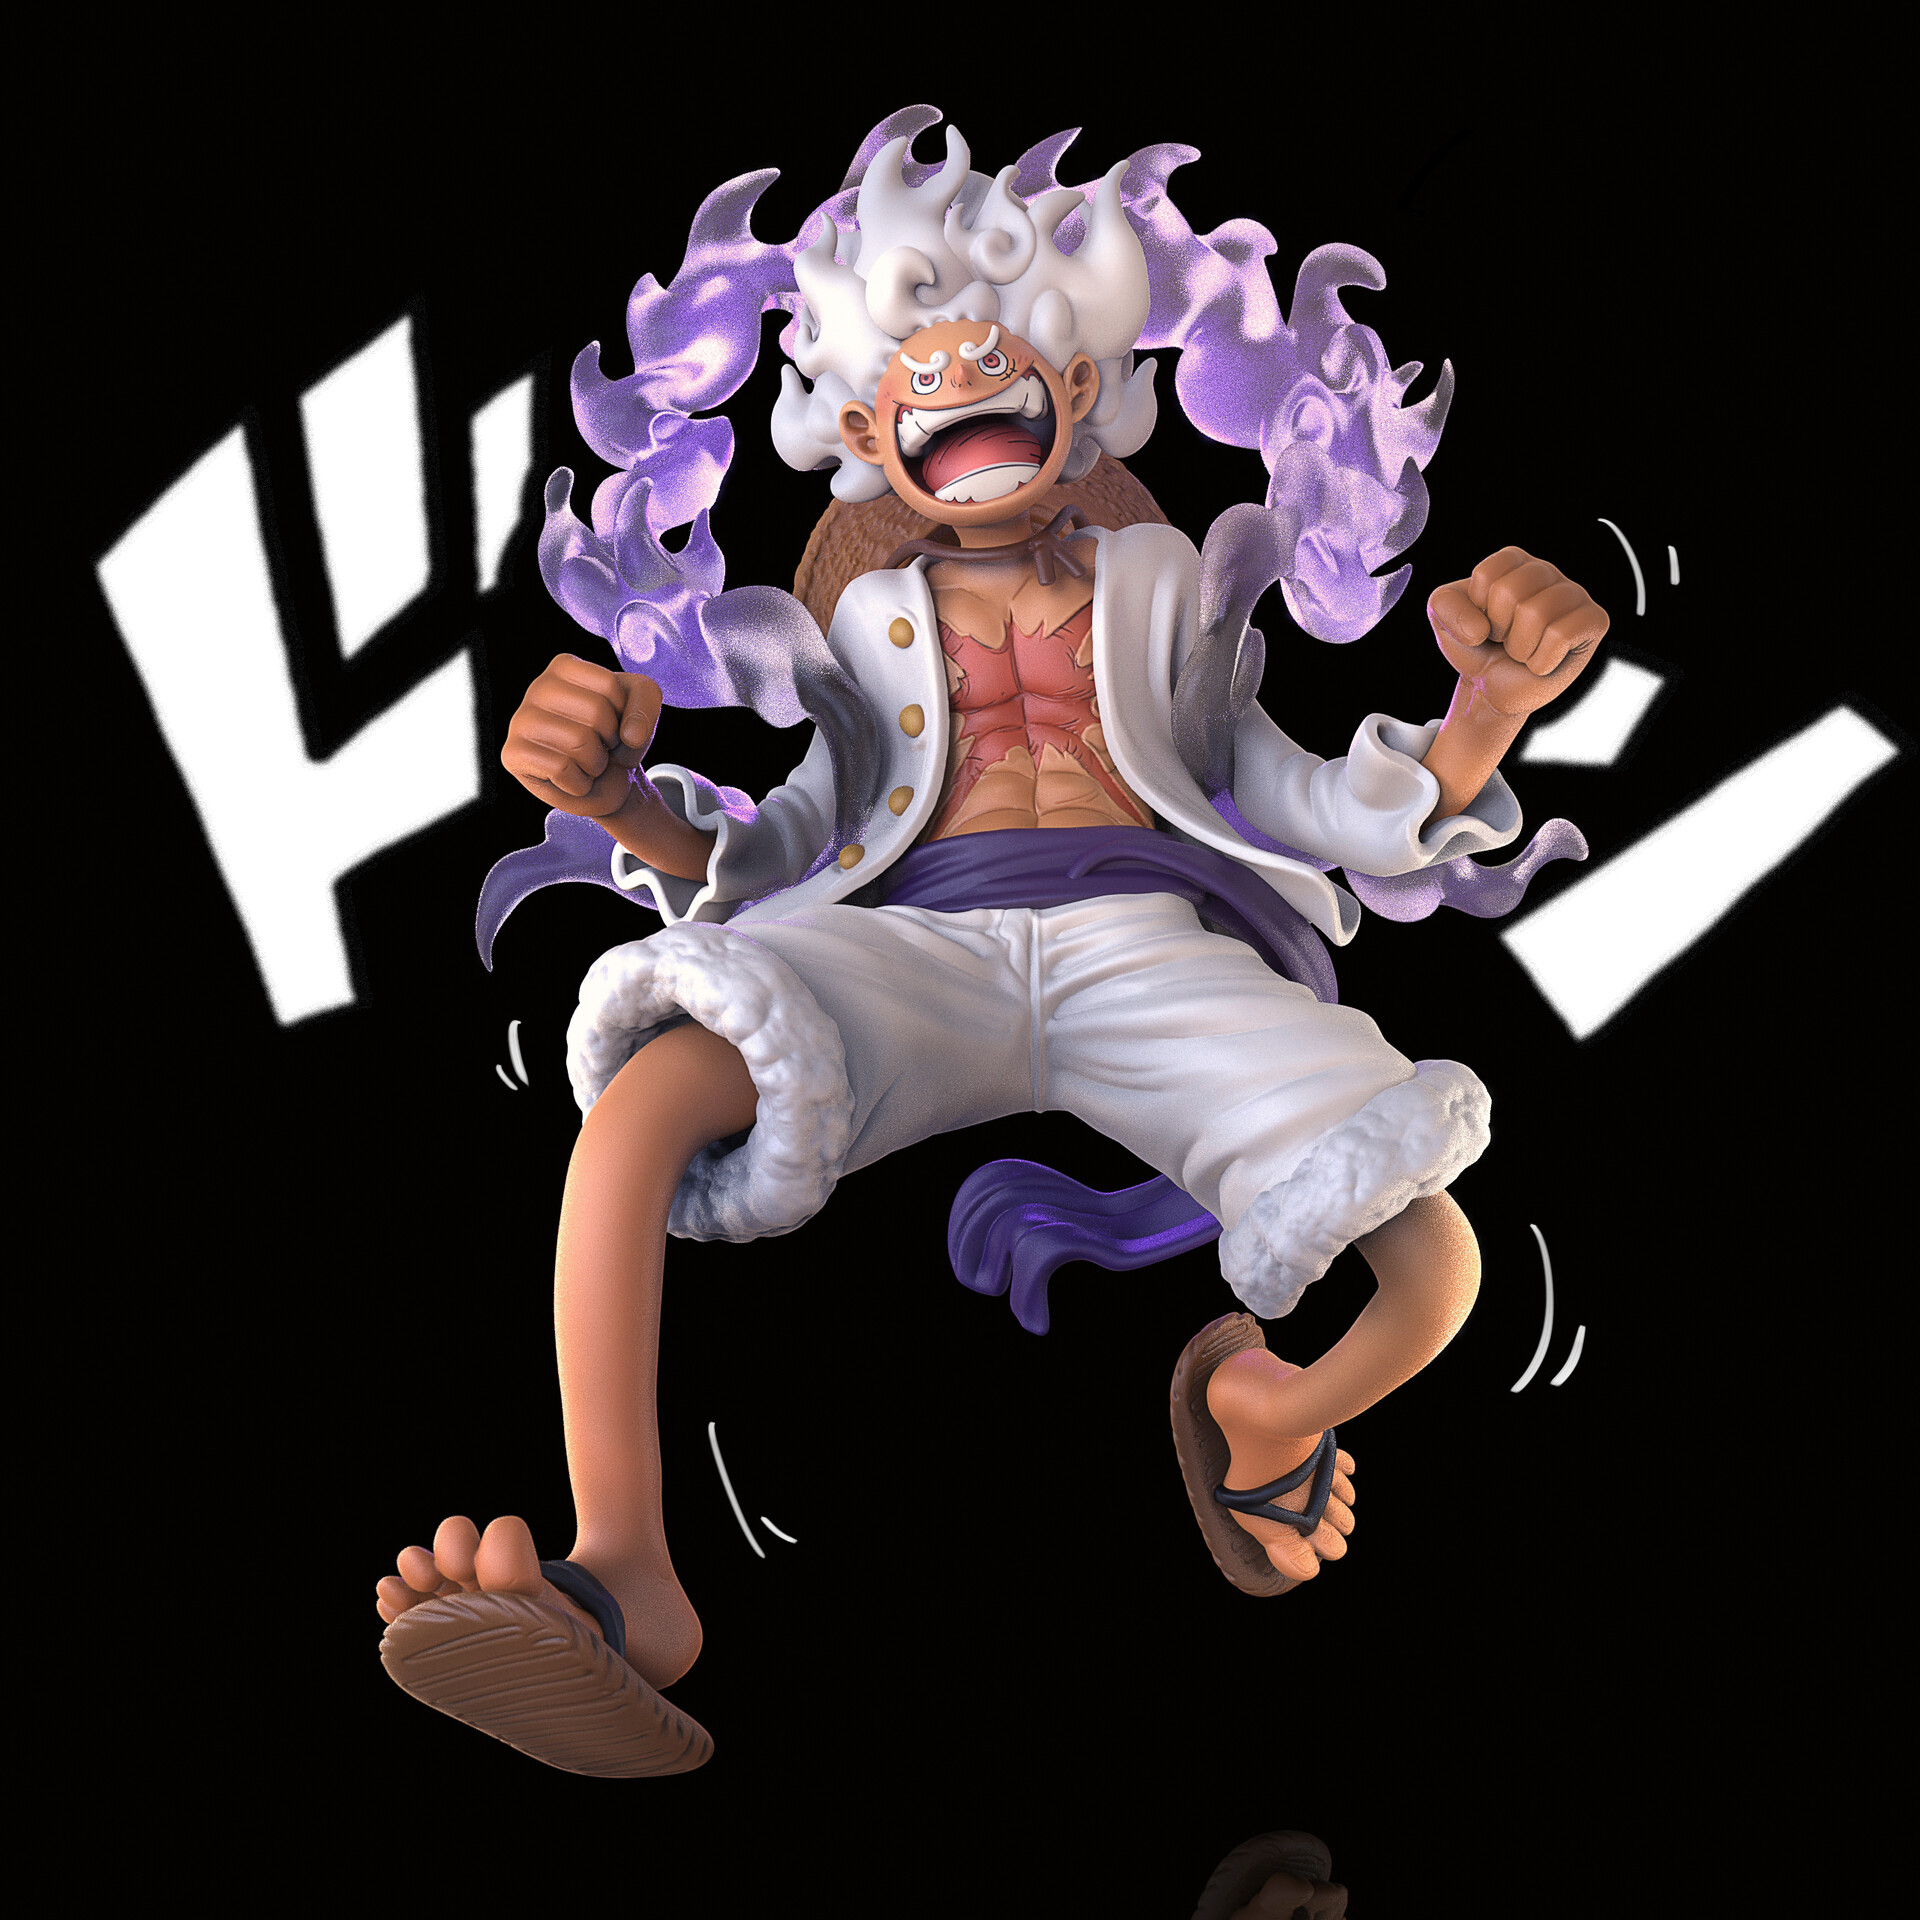 Gear 5 (One Piece) – WHT ART